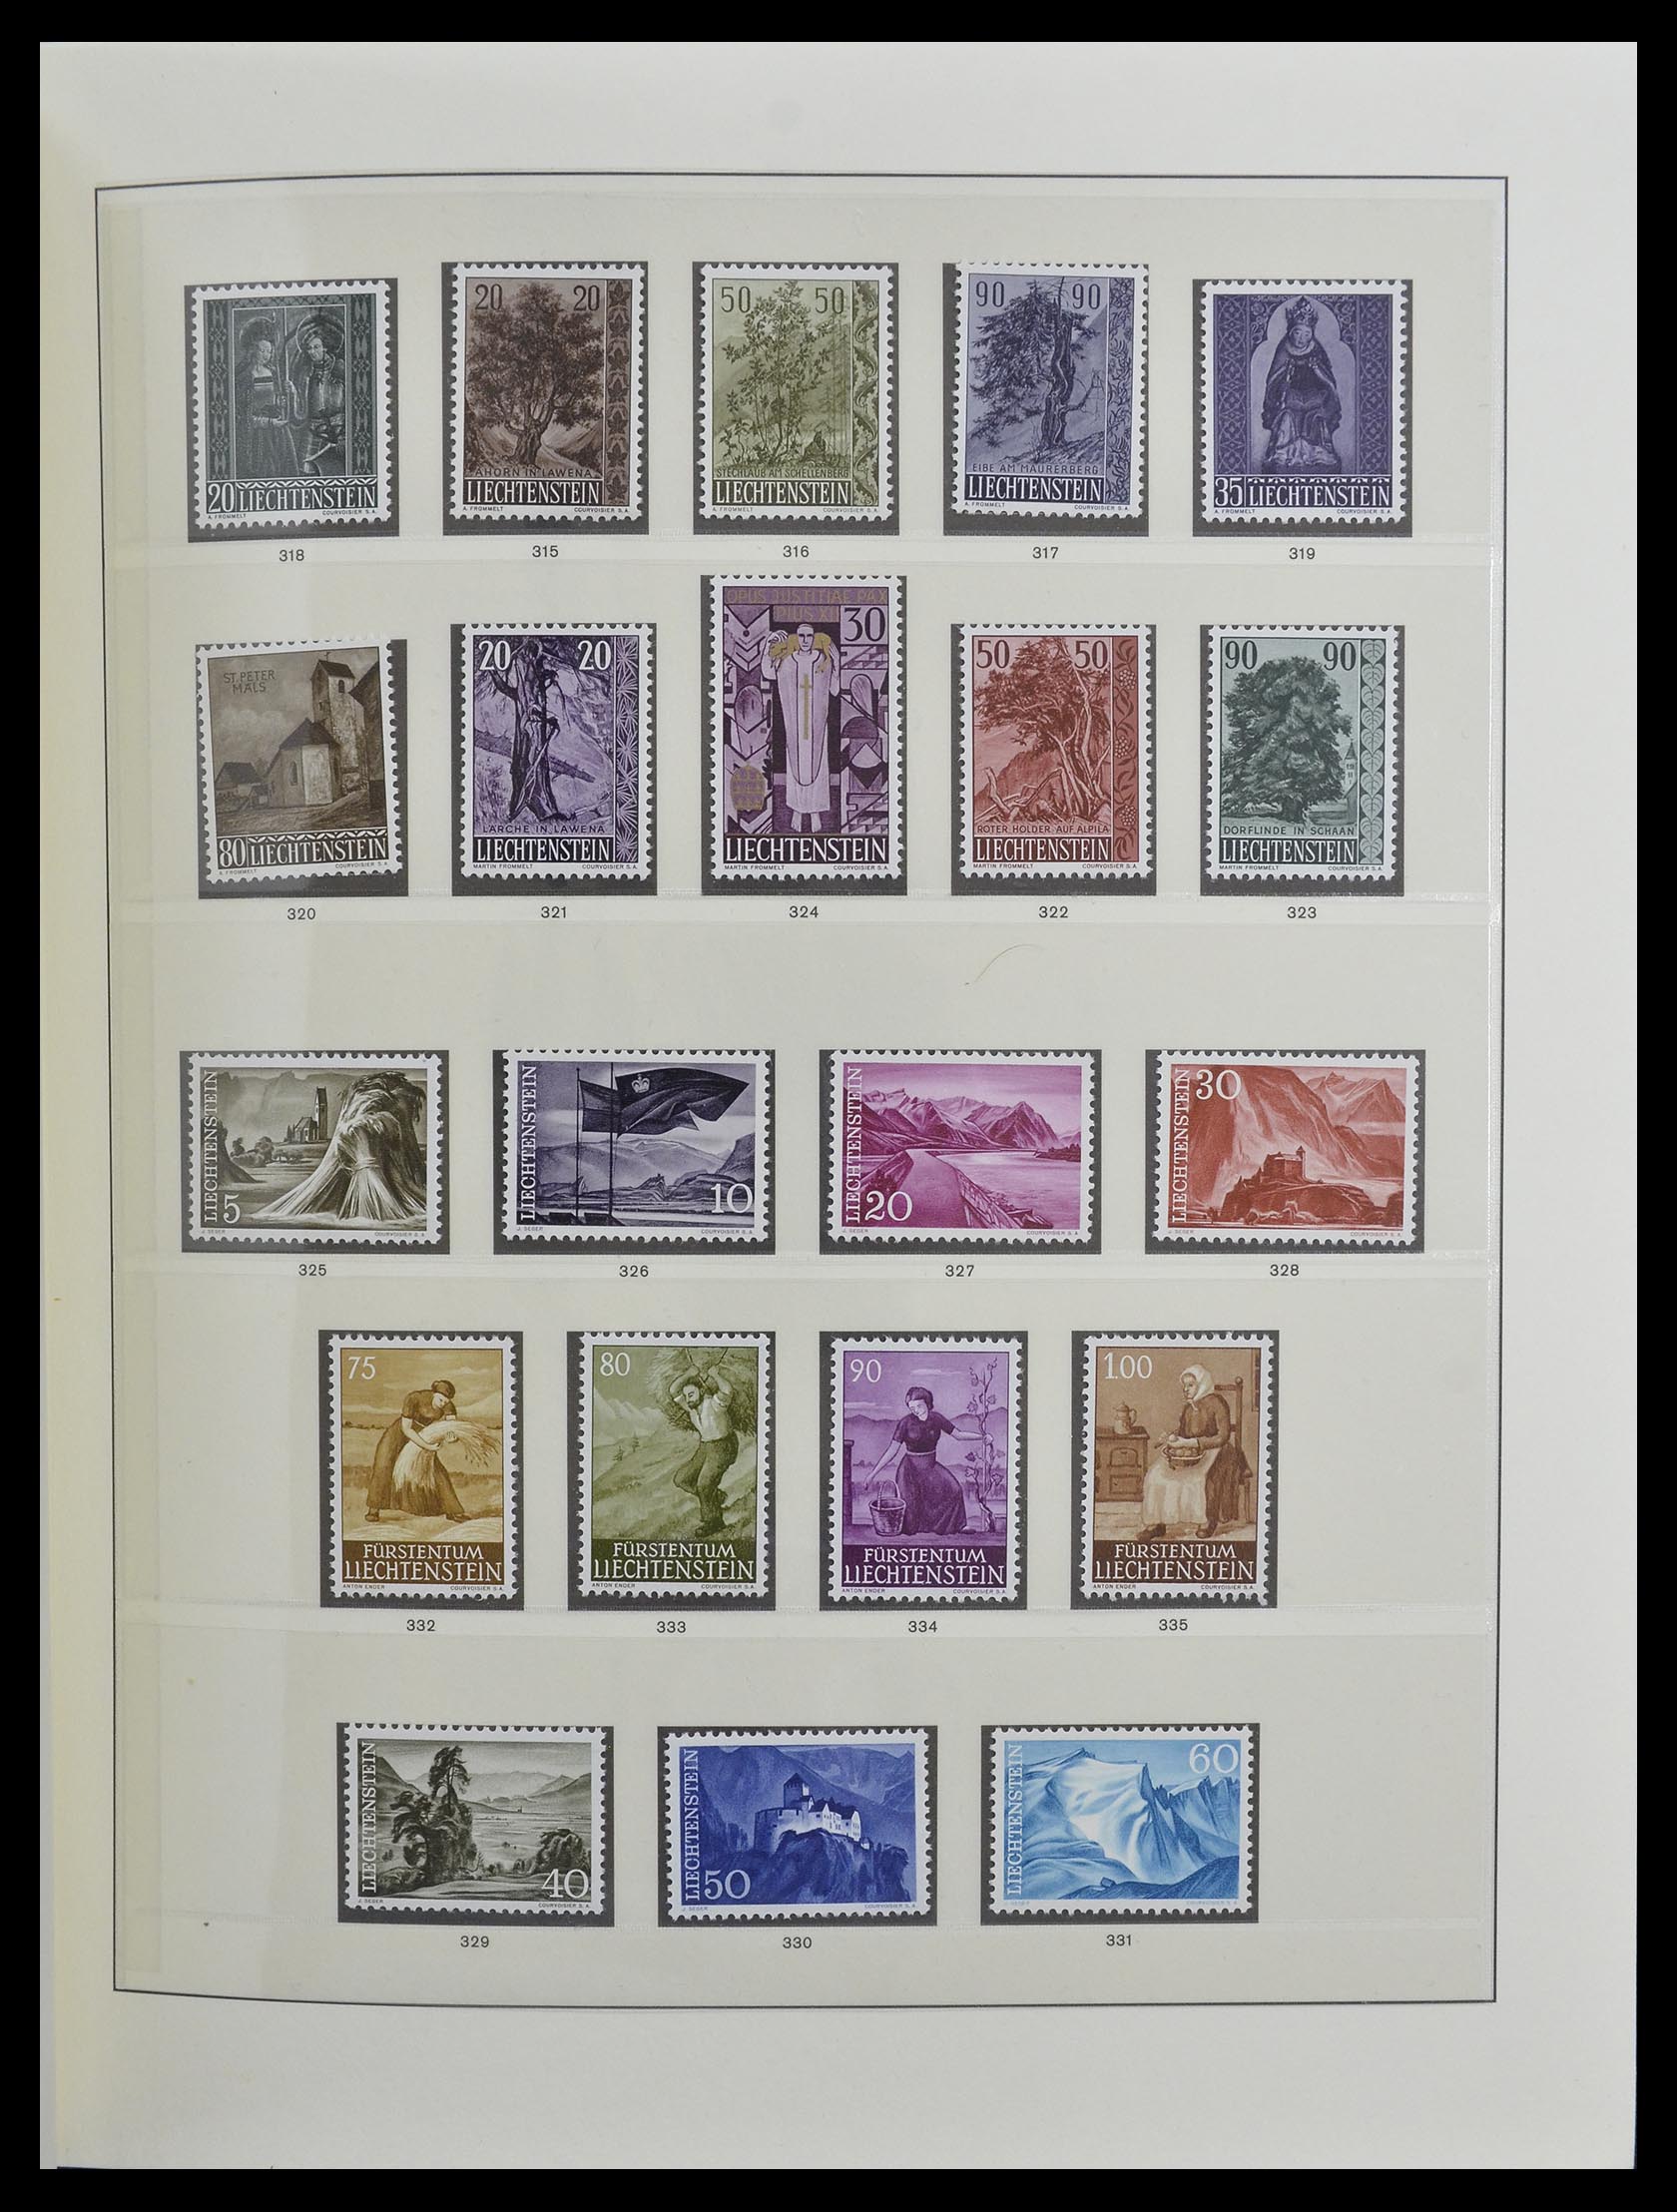 33140 016 - Stamp collection 33140 Liechtenstein 1912-1990.